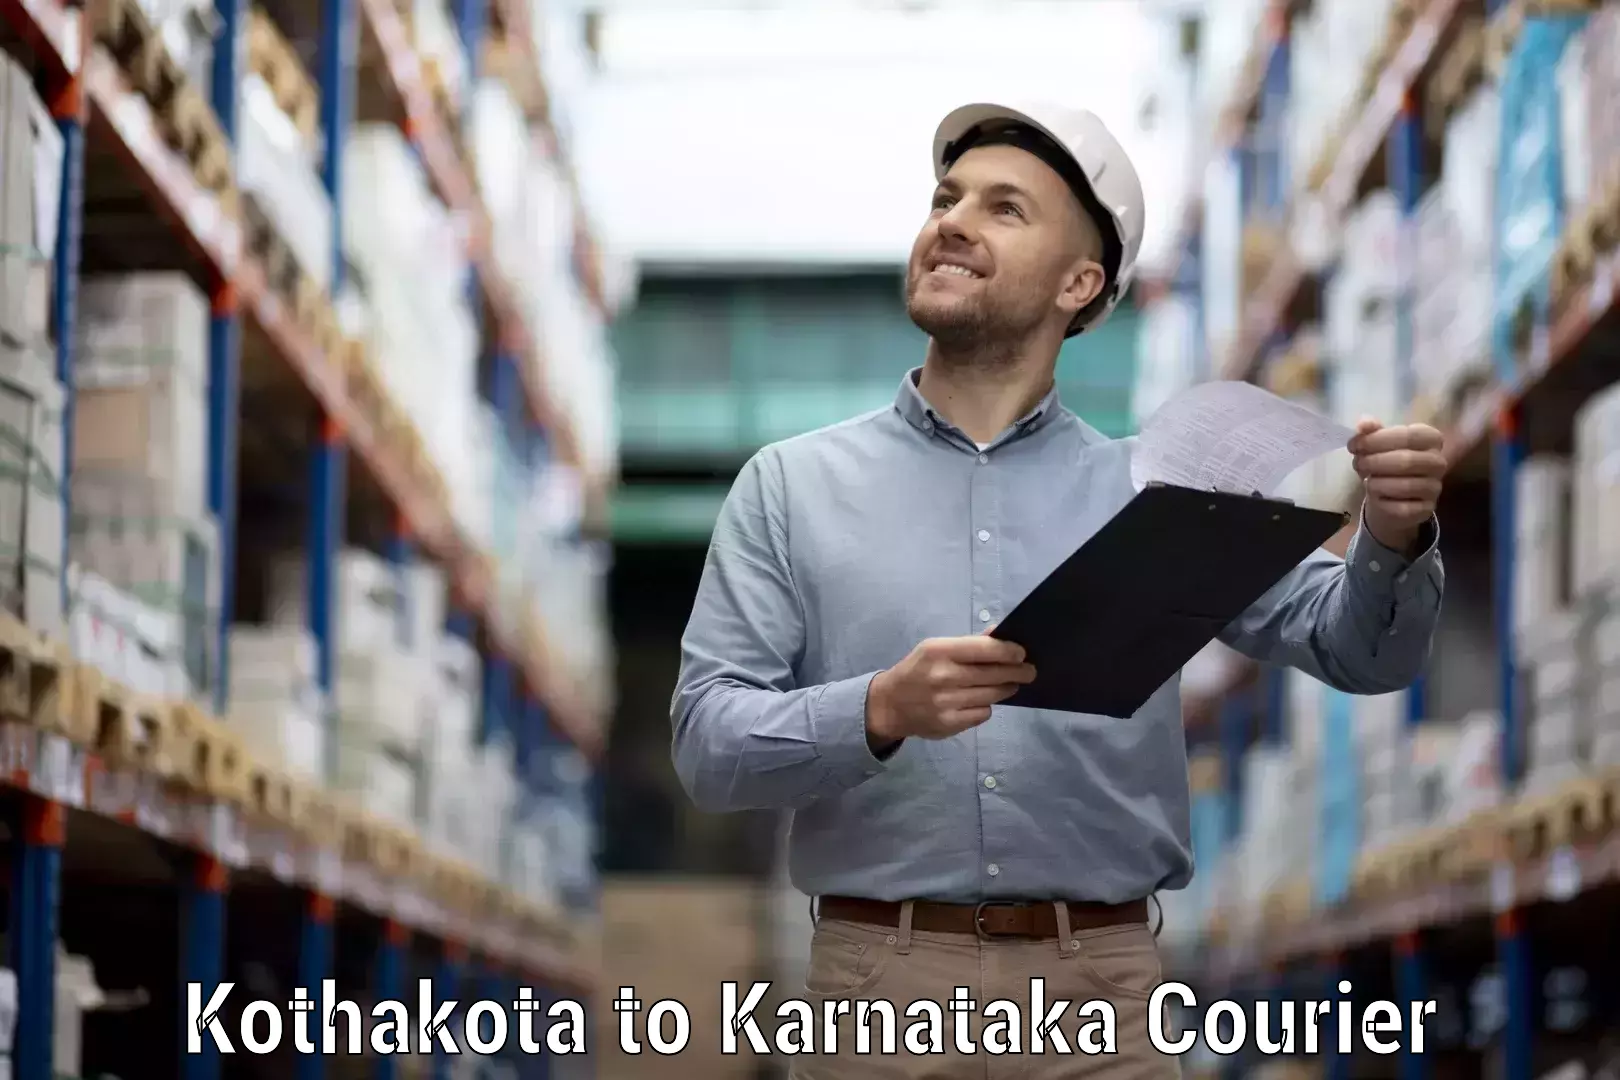 24/7 courier service Kothakota to Ballari